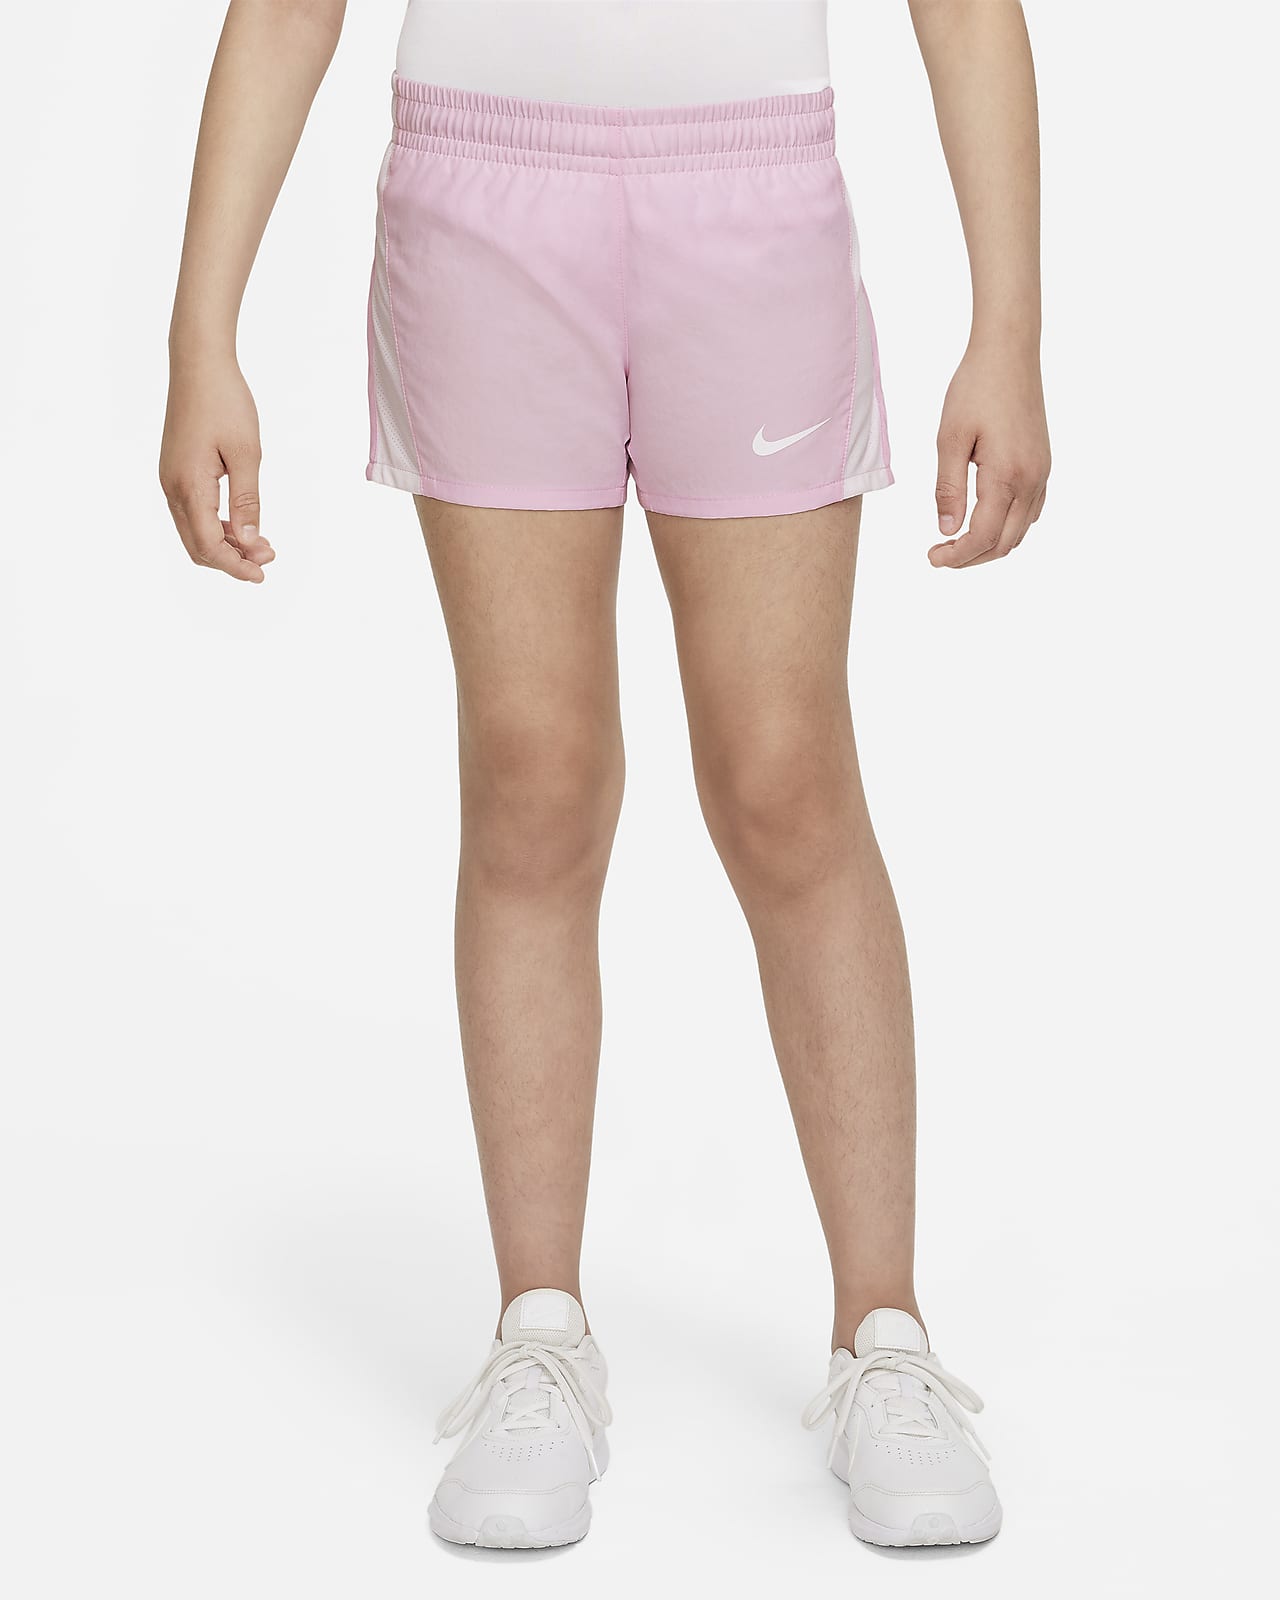 Löparshorts Nike 9 cm för tjejer